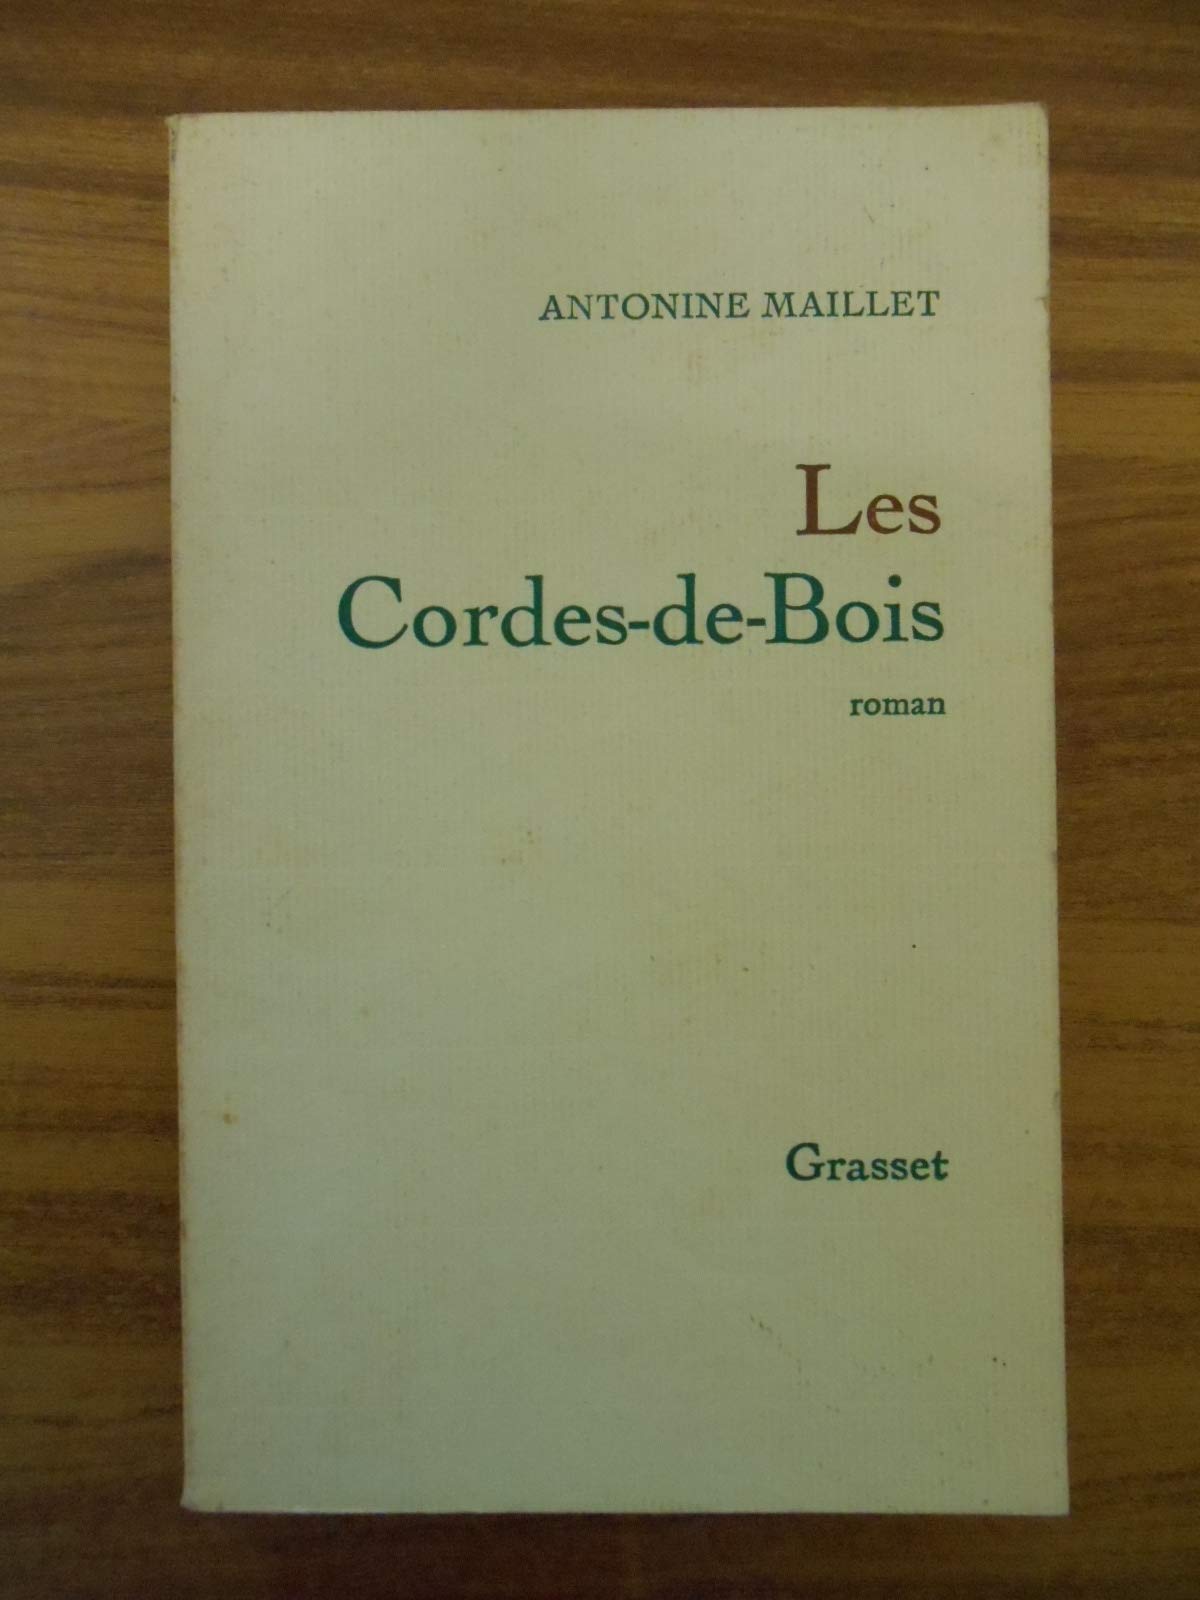 Les cordes-de-bois - Antonine Maillet